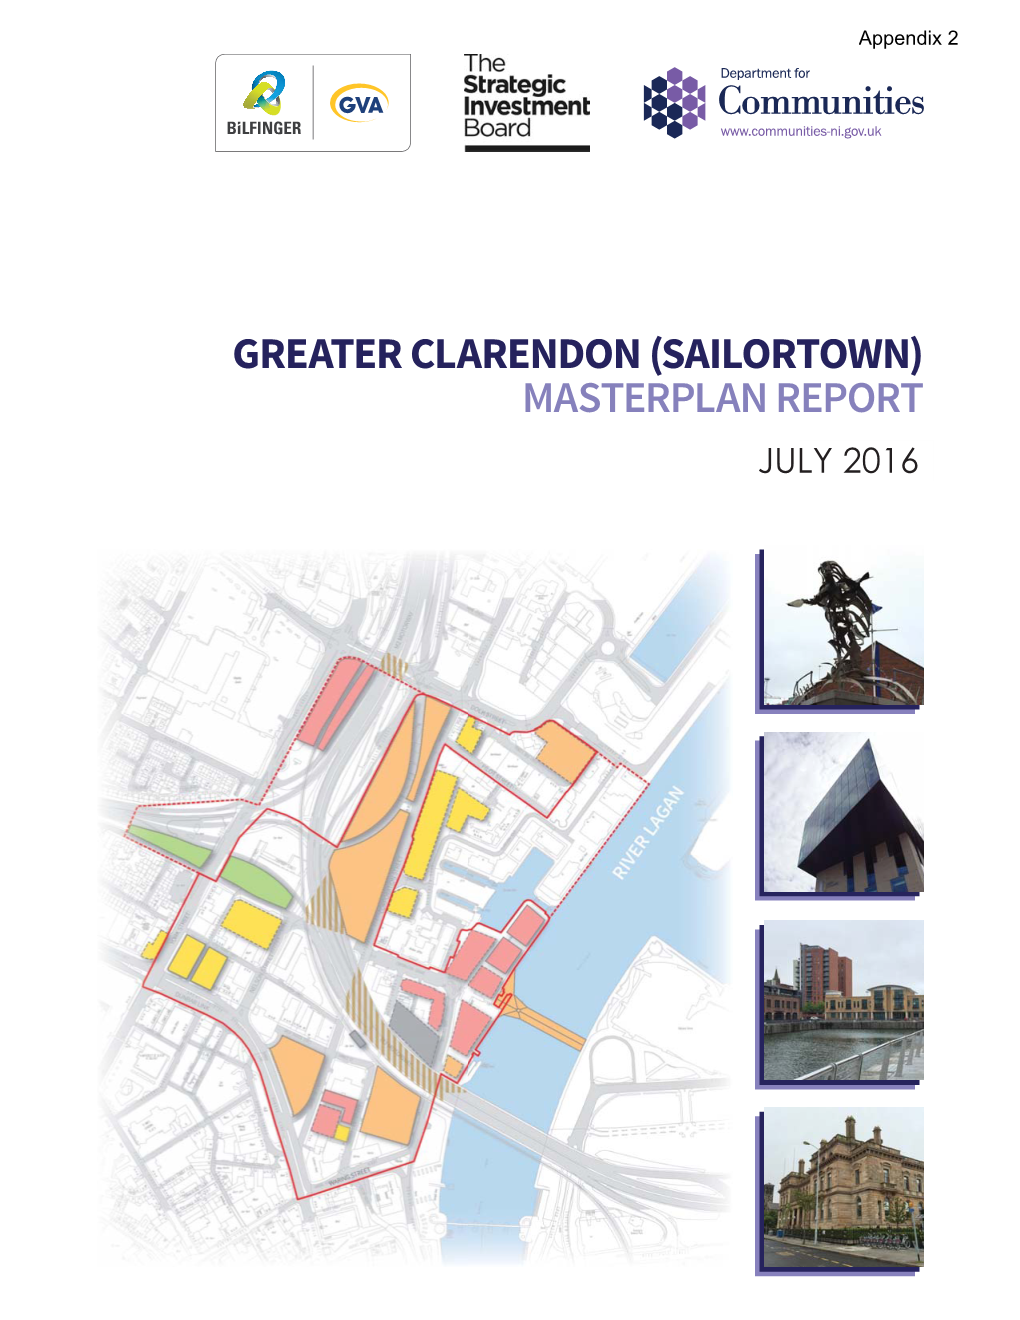 Sailortown) Masterplan Report